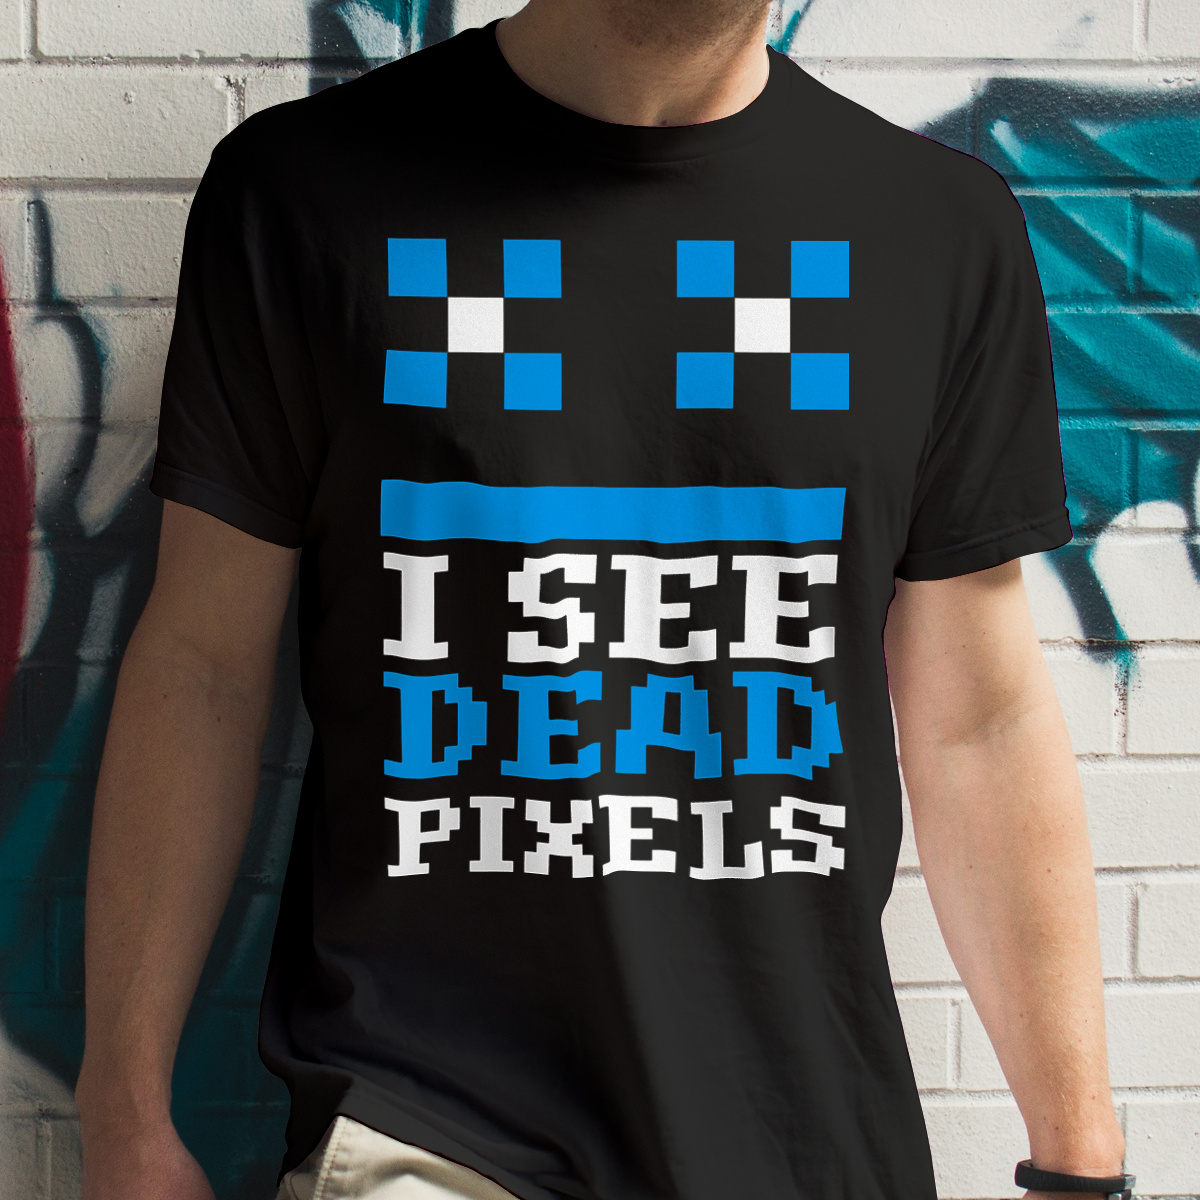 I See Dead Pixels - Męska Koszulka Czarna